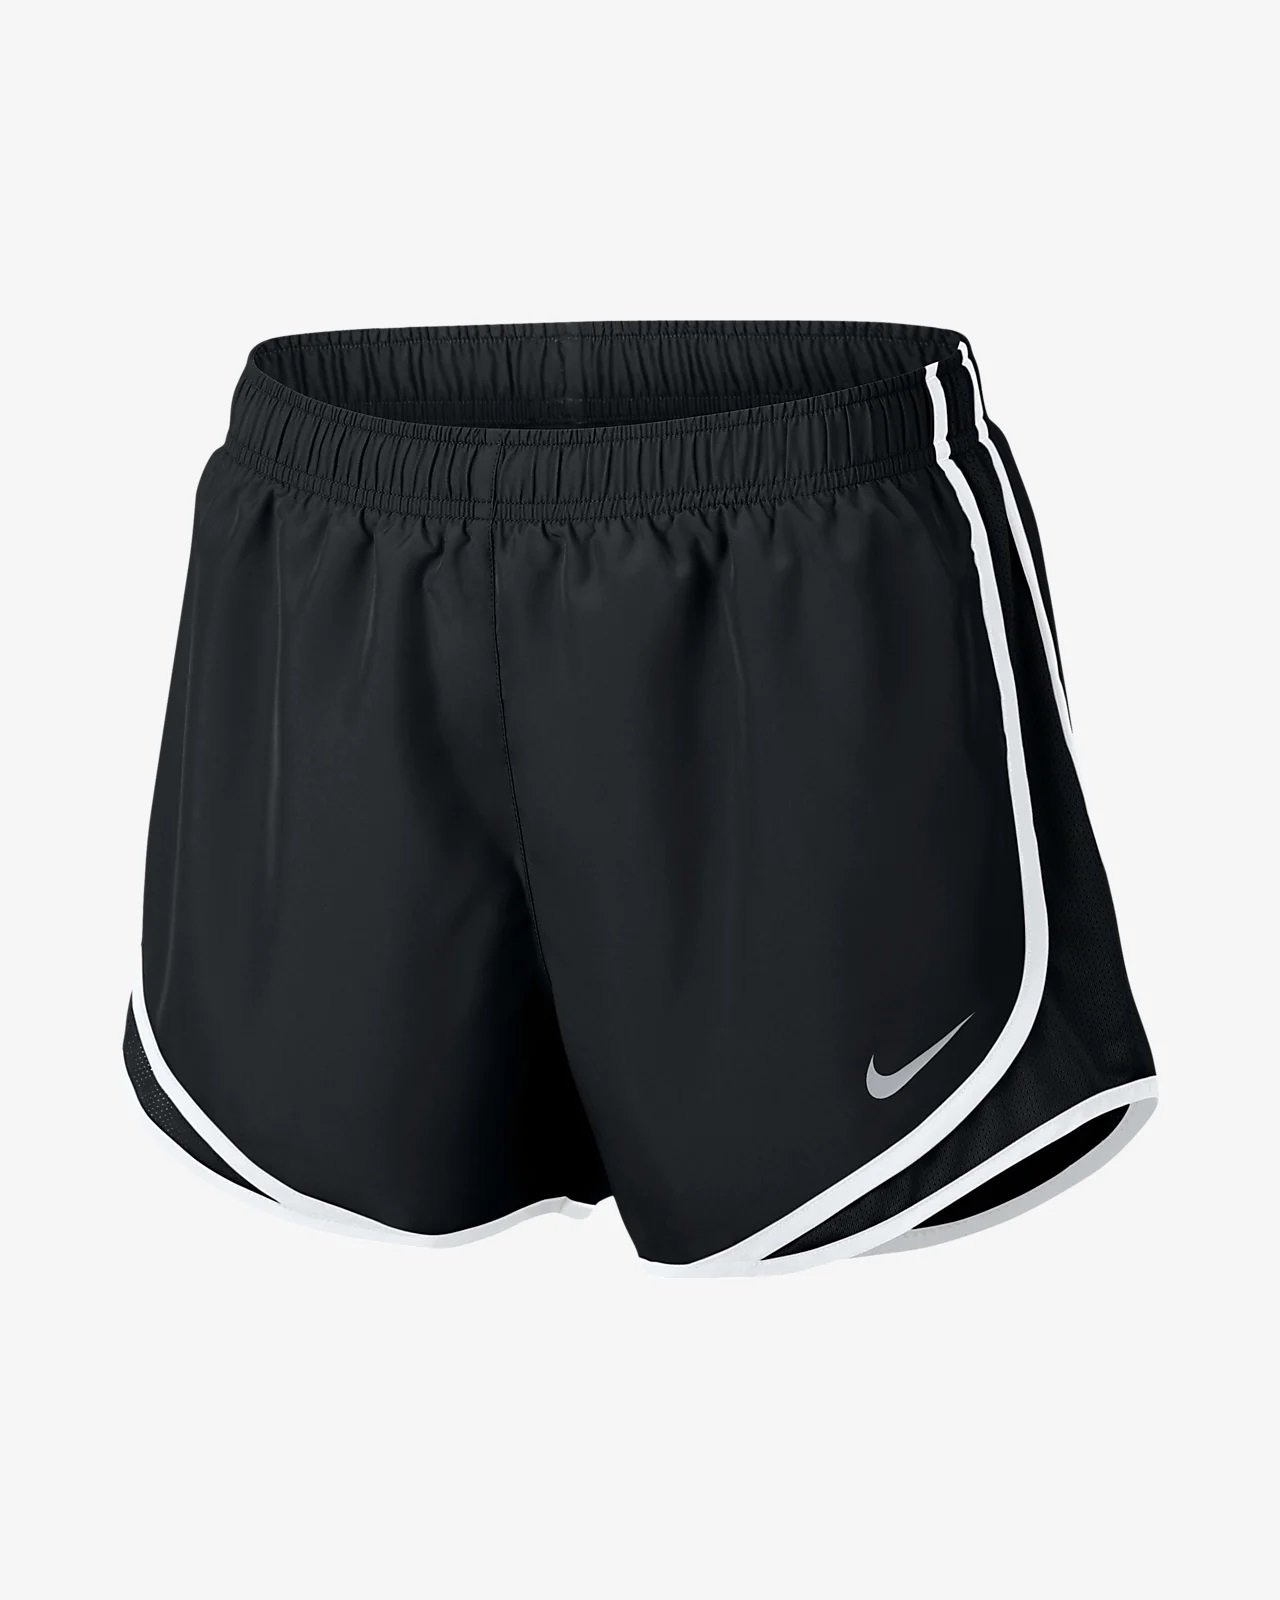 Nike Tempo Running Shorts.jpg